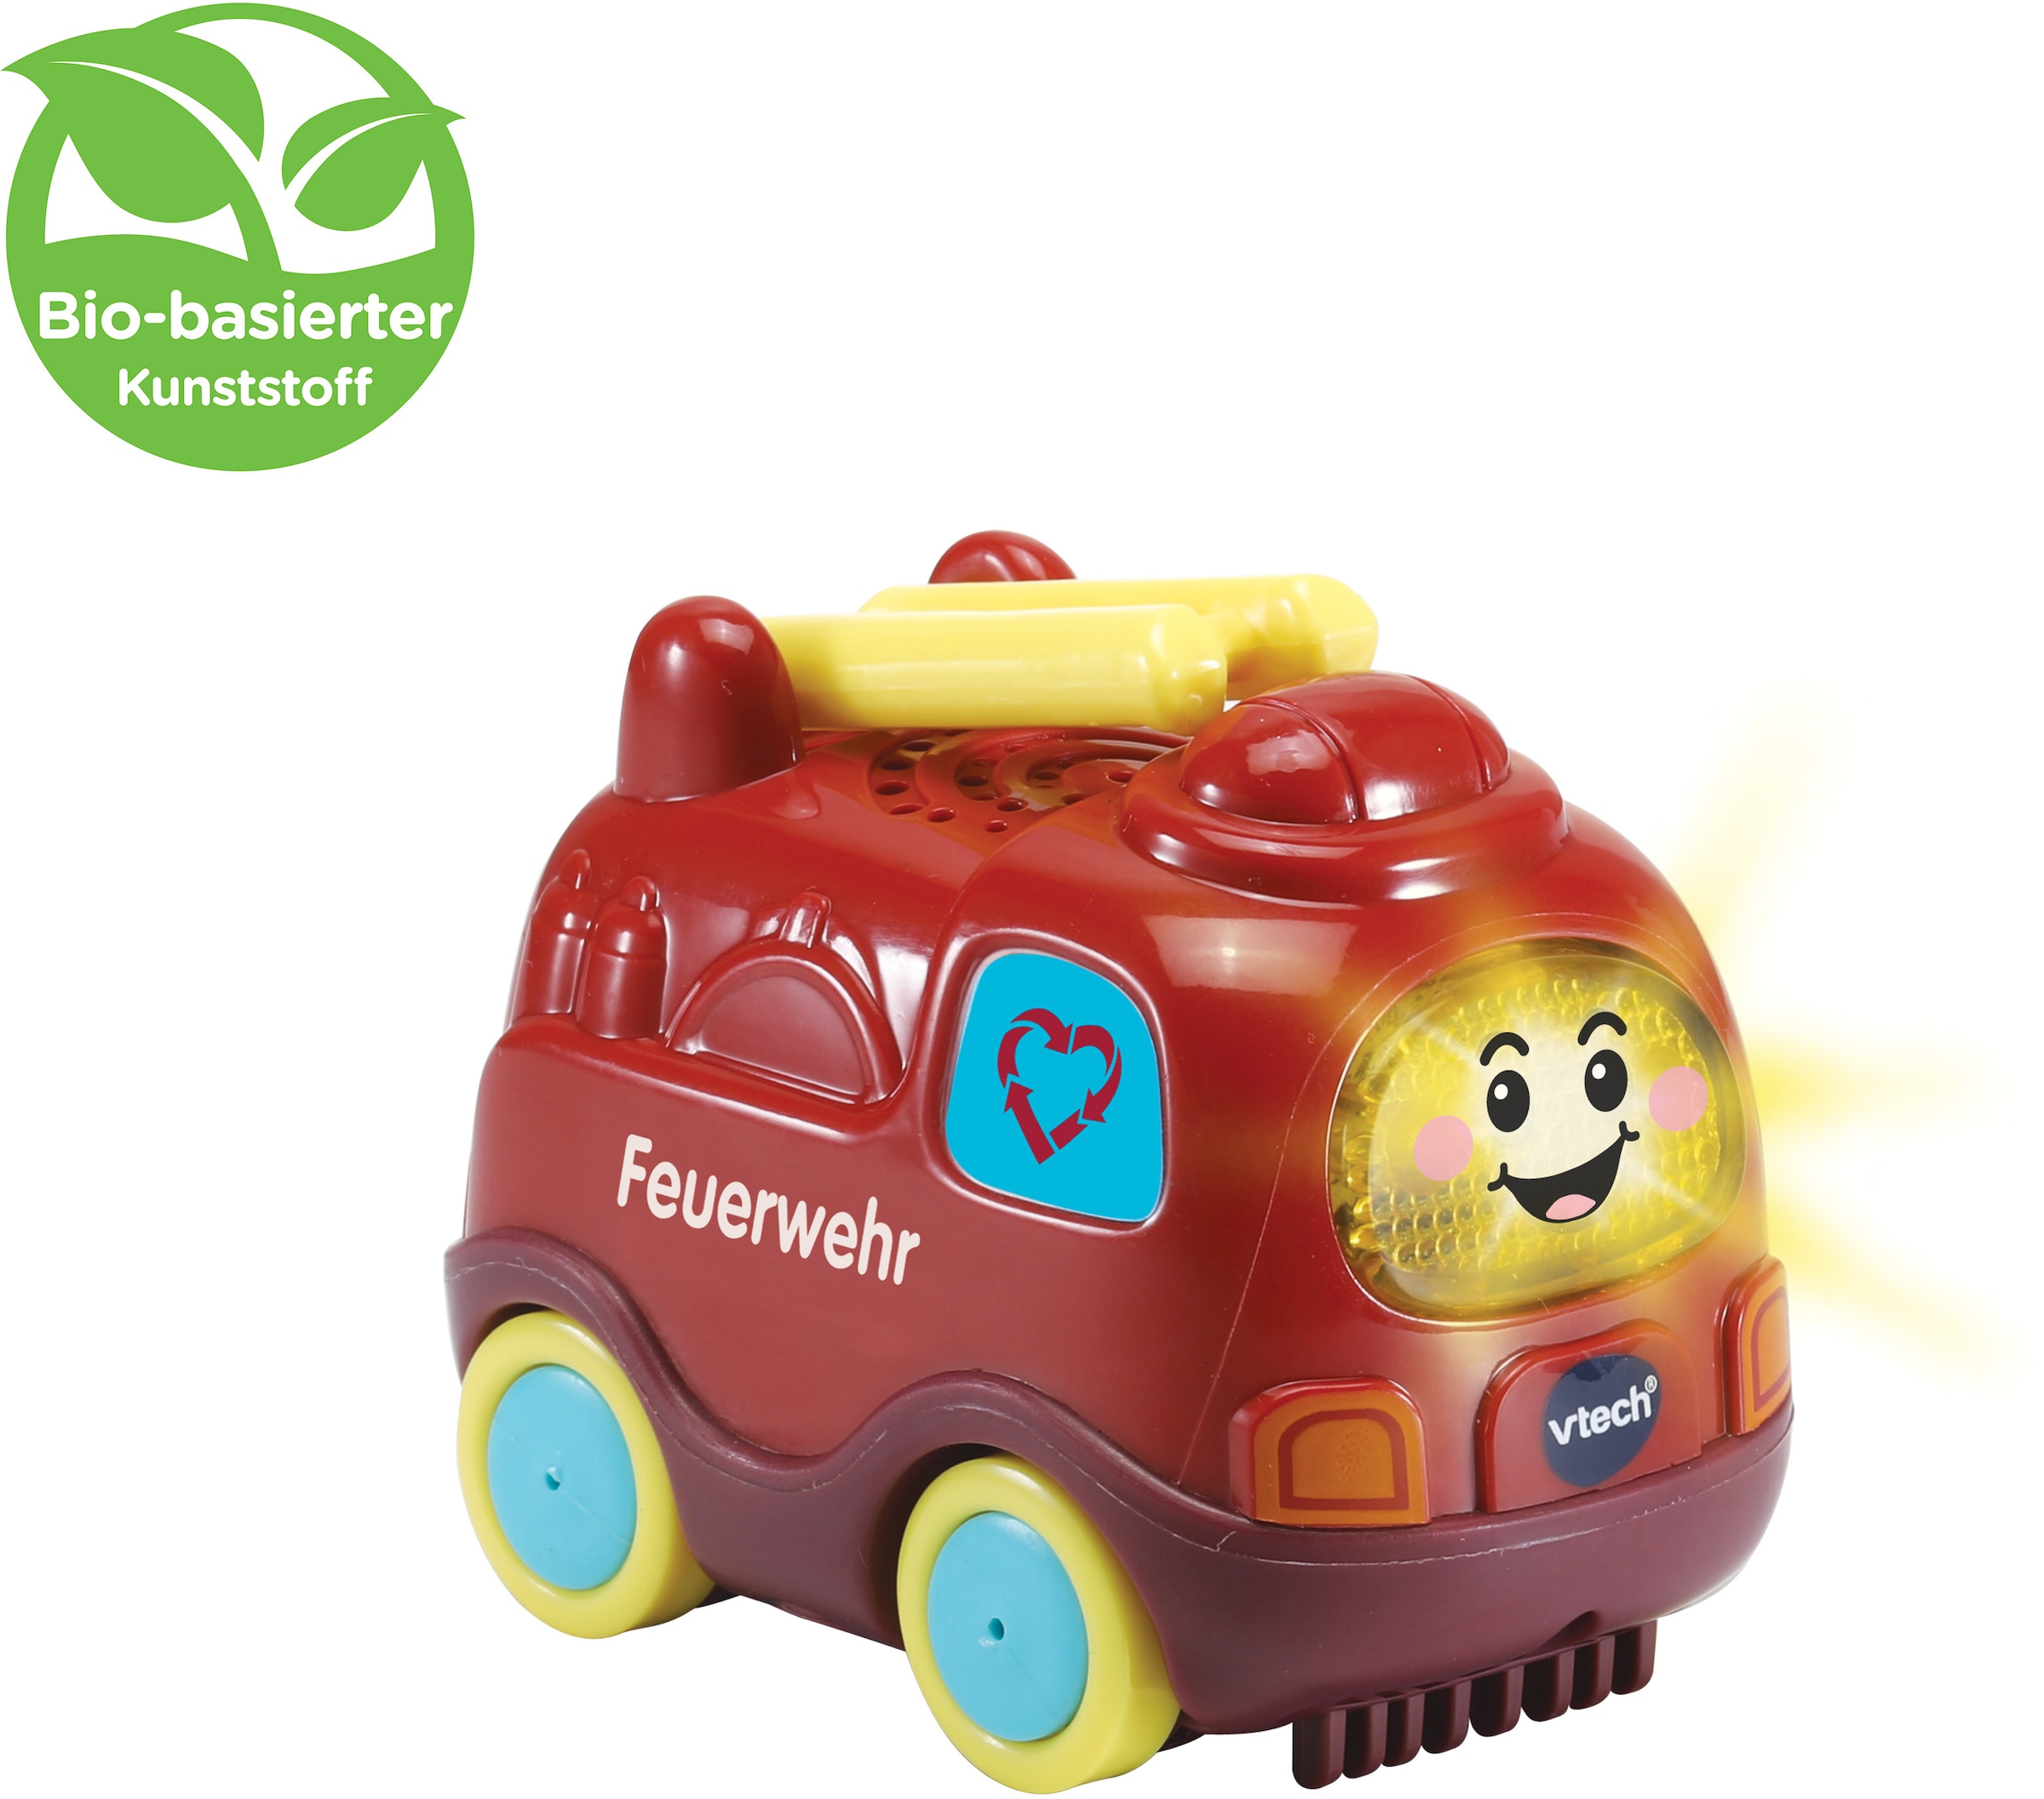 Vtech® Spielzeug-Feuerwehr »Tut Tut Baby Flitzer, Feuerwehr«, aus bio-basiertem Kunststoff